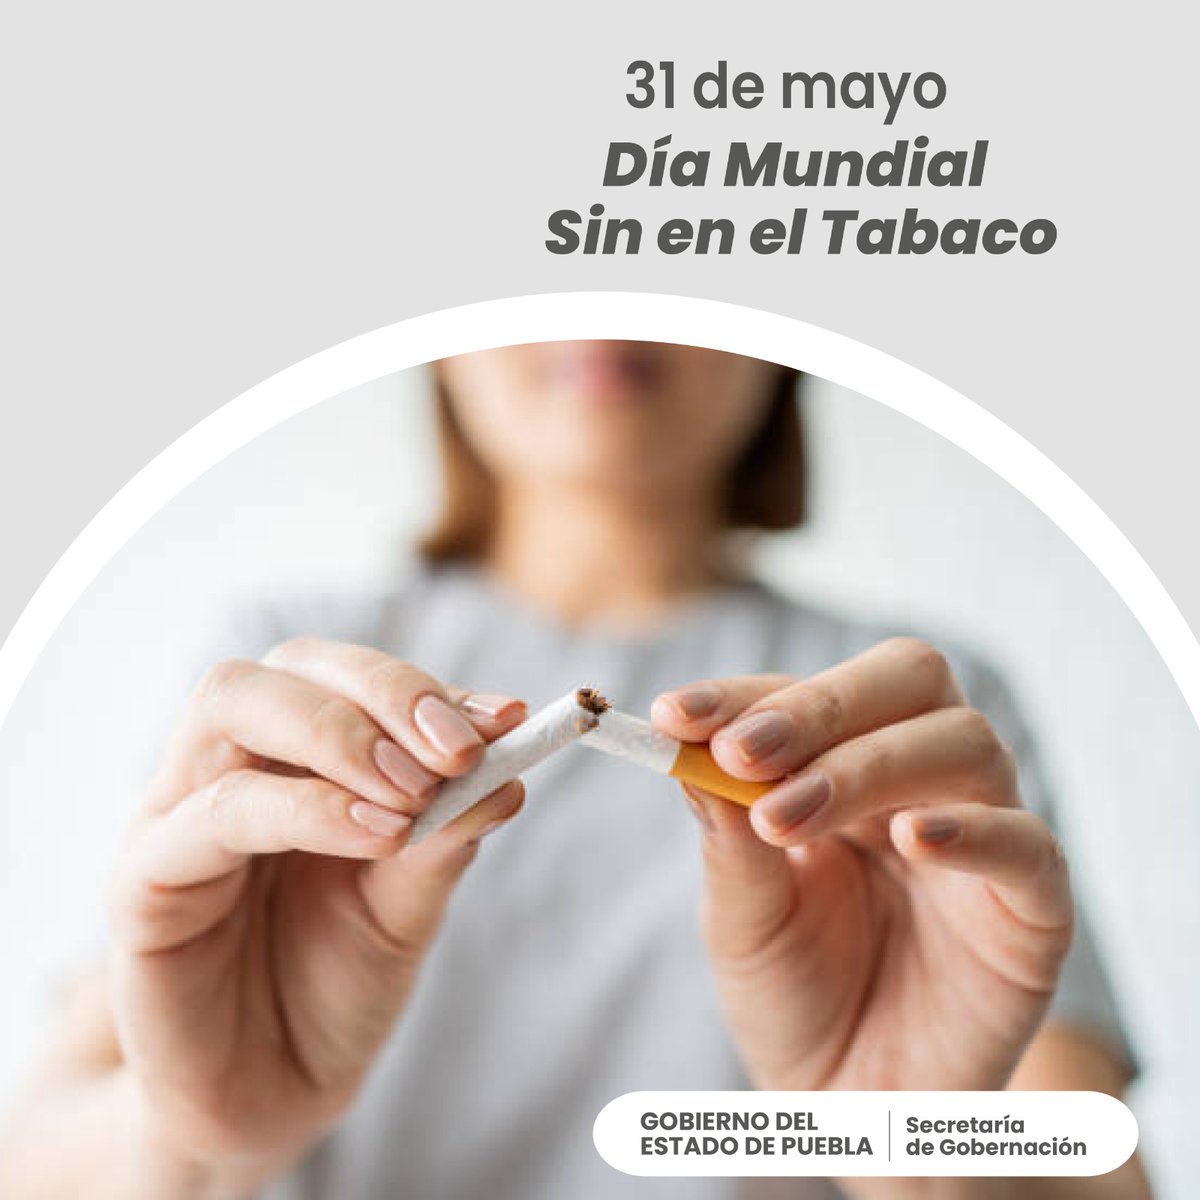 La Asamblea Mundial de la Salud instituyó el “Día Mundial sin Tabaco” en 1987, con el objetivo de concienciar los peligros del tabaquismo para la salud y fomentar la adopción de medidas salud públicas para reducir su consumo.